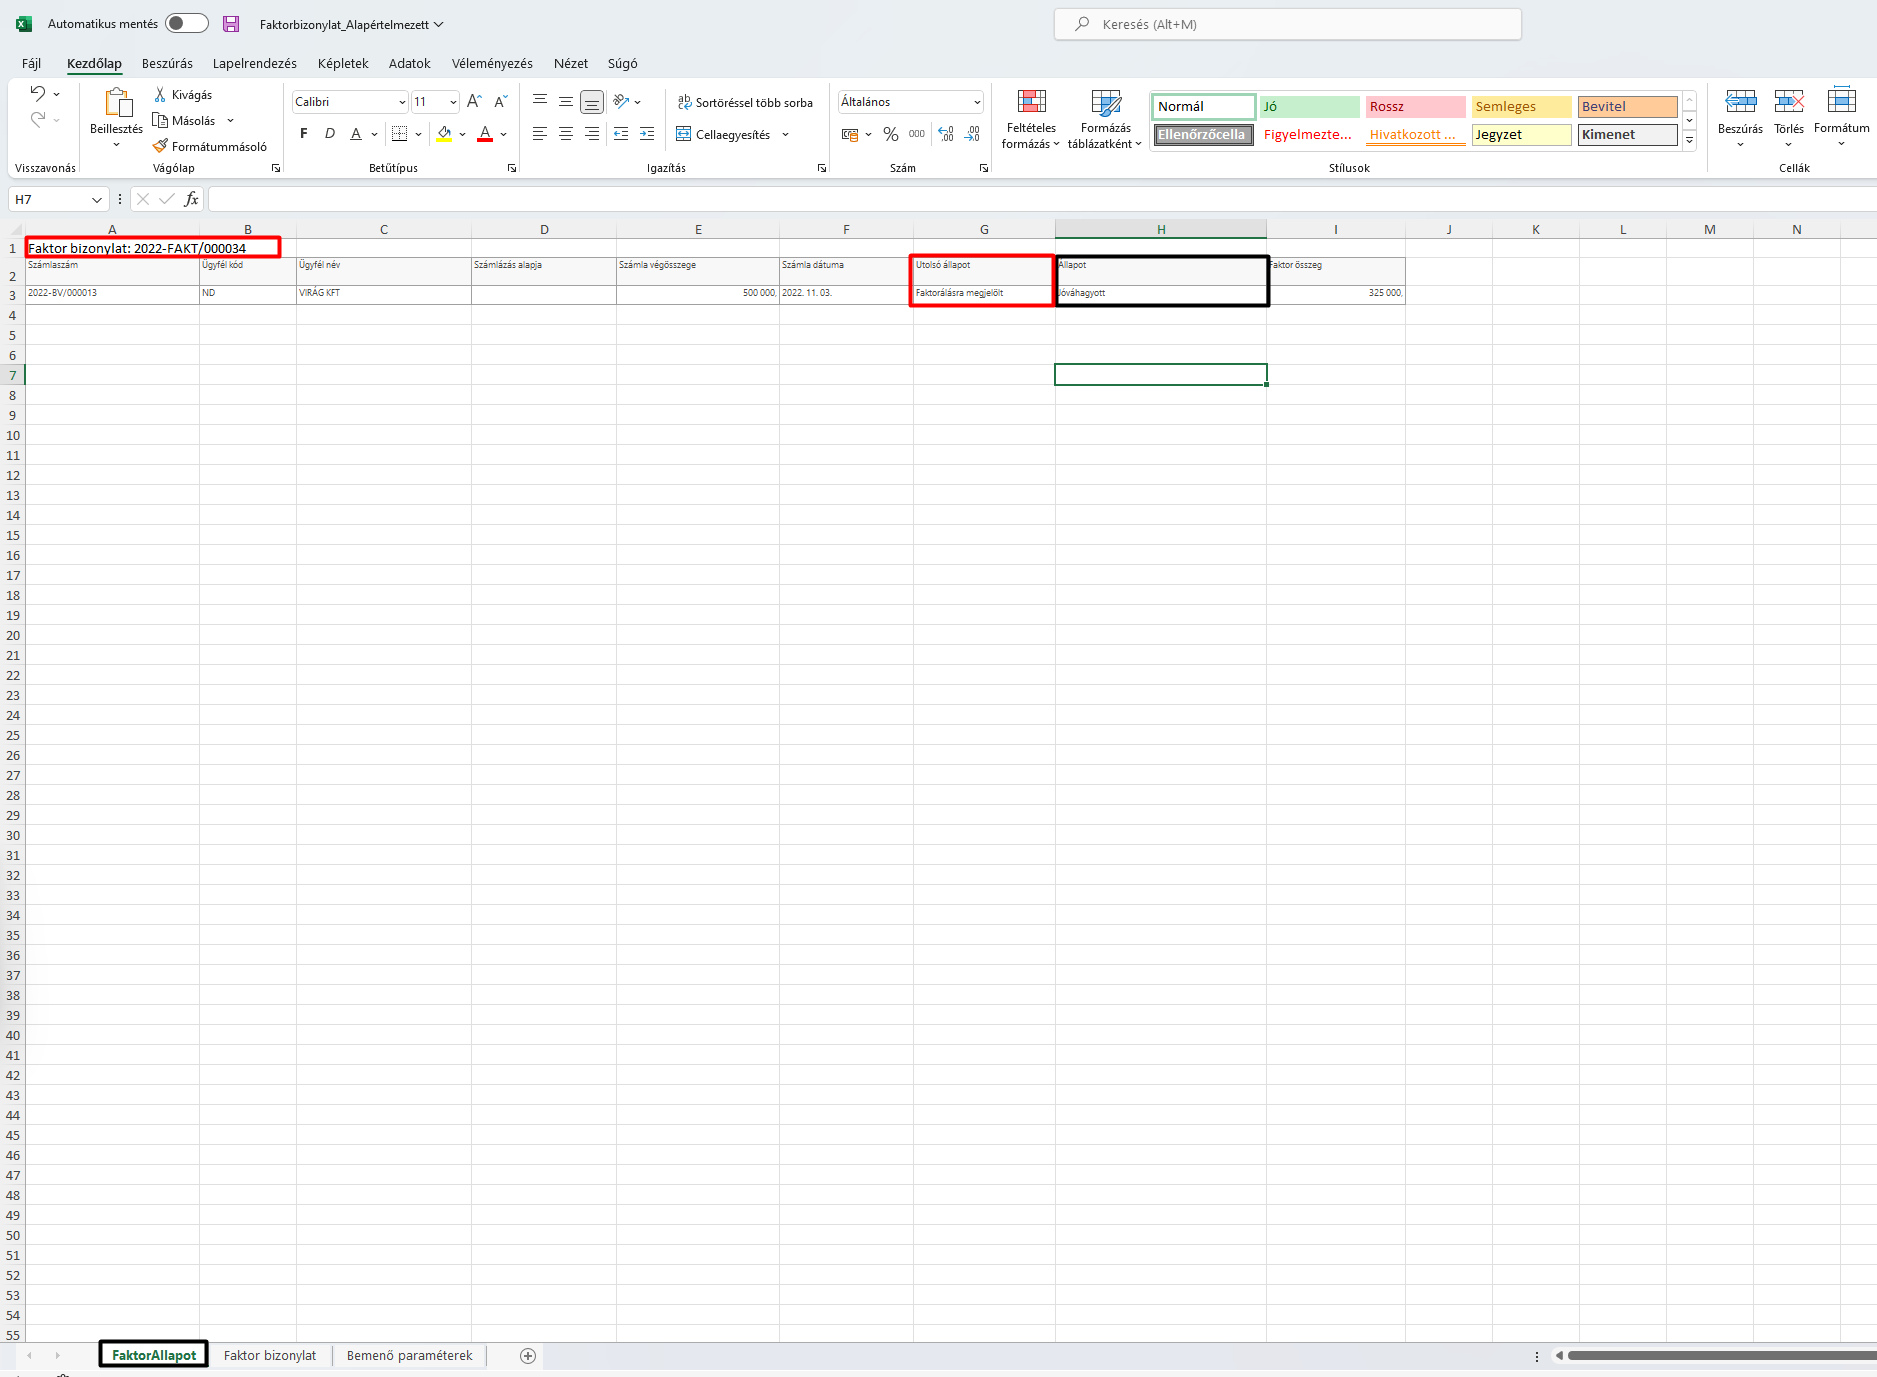 -Excel táblázat módosításai-